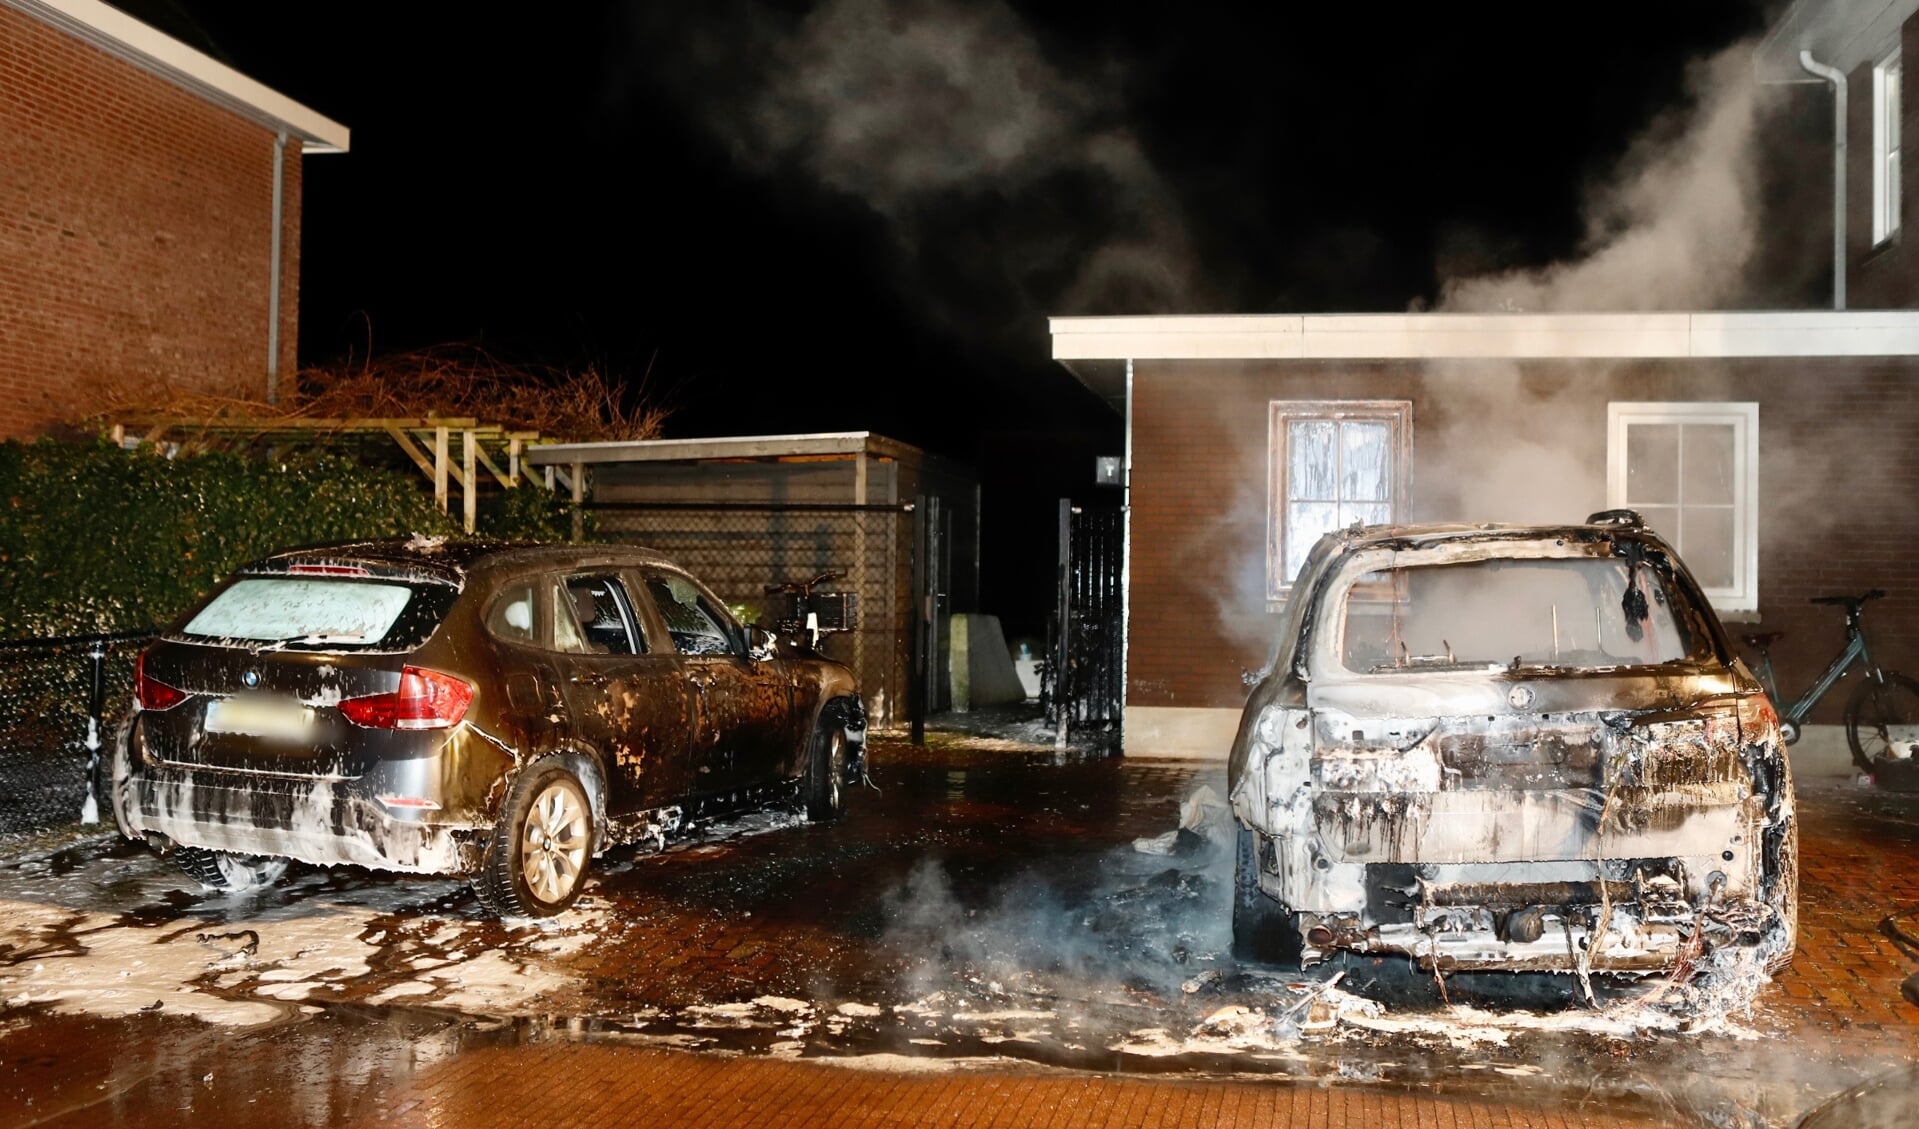 Meerdere auto's brandden in januari af.